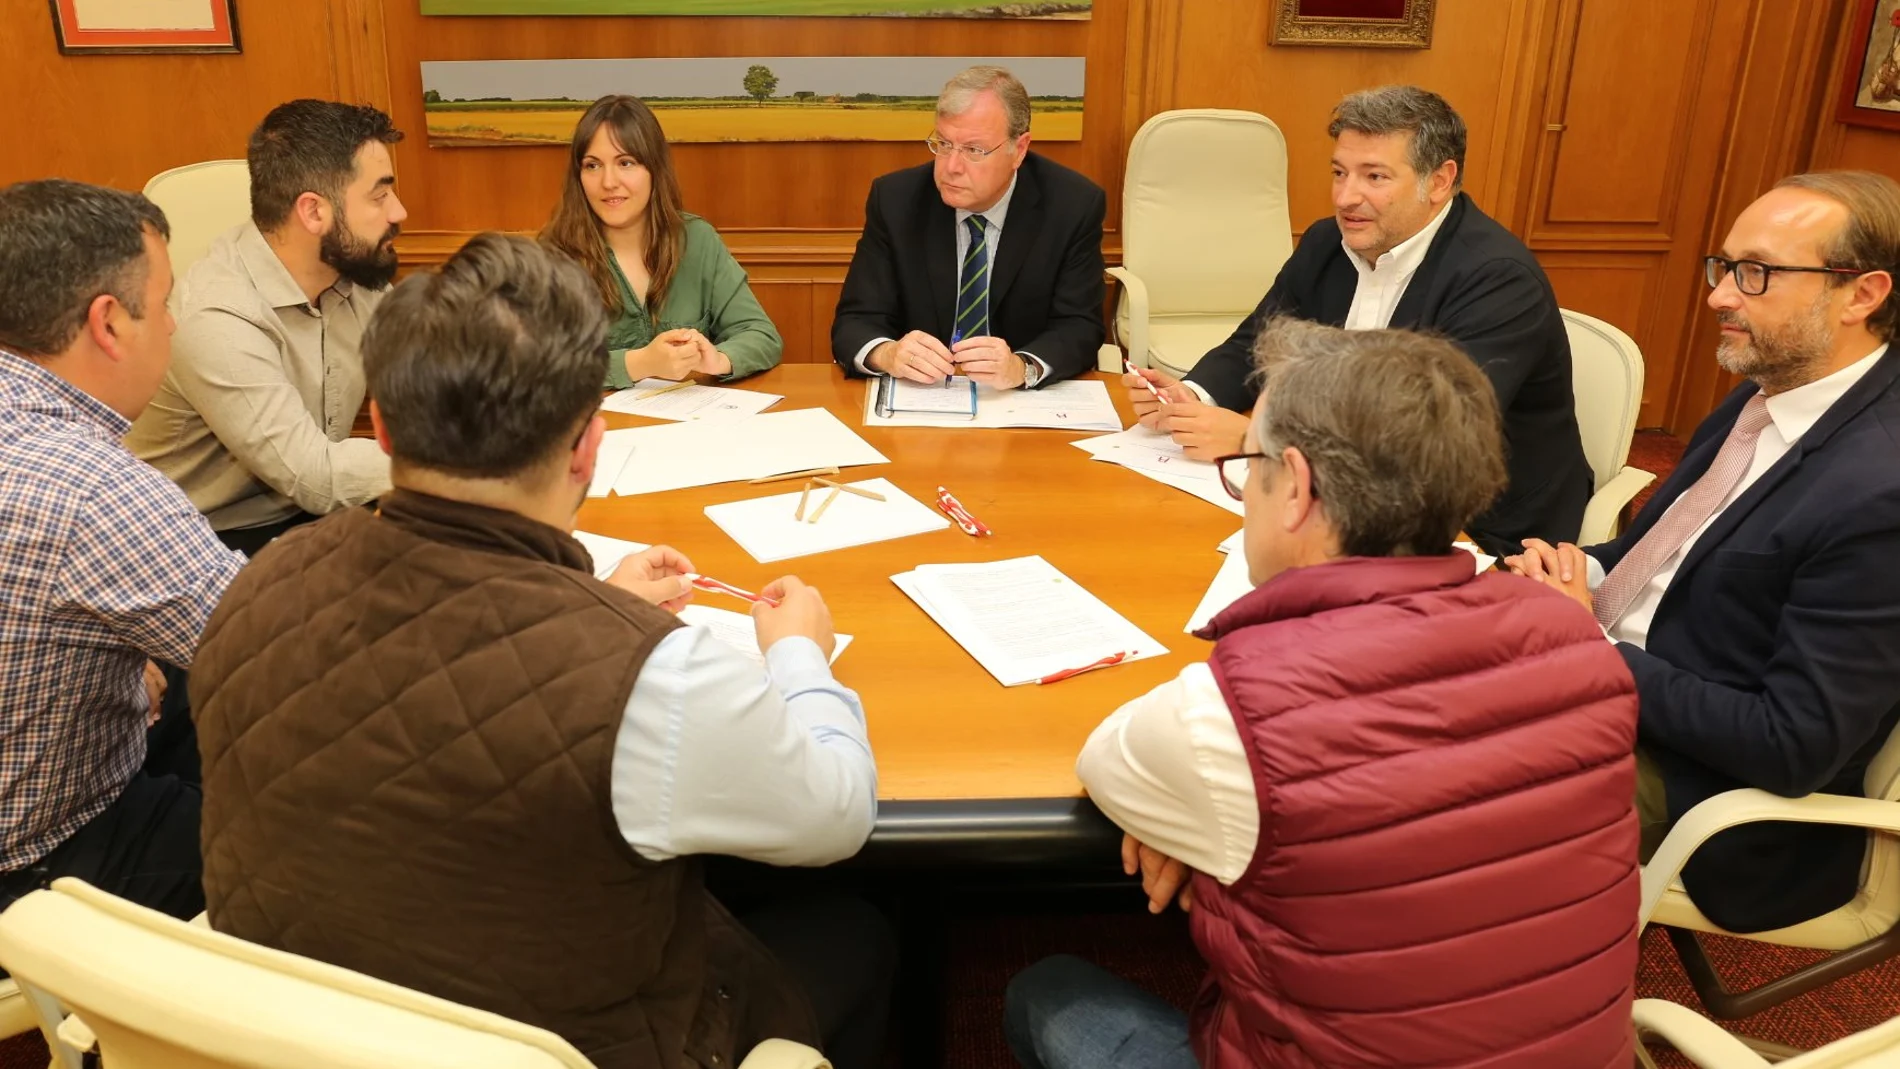 El alcalde de León, Antonio Silván, se reúne con los miembros de las residencias universitarias privadas de la ciudad